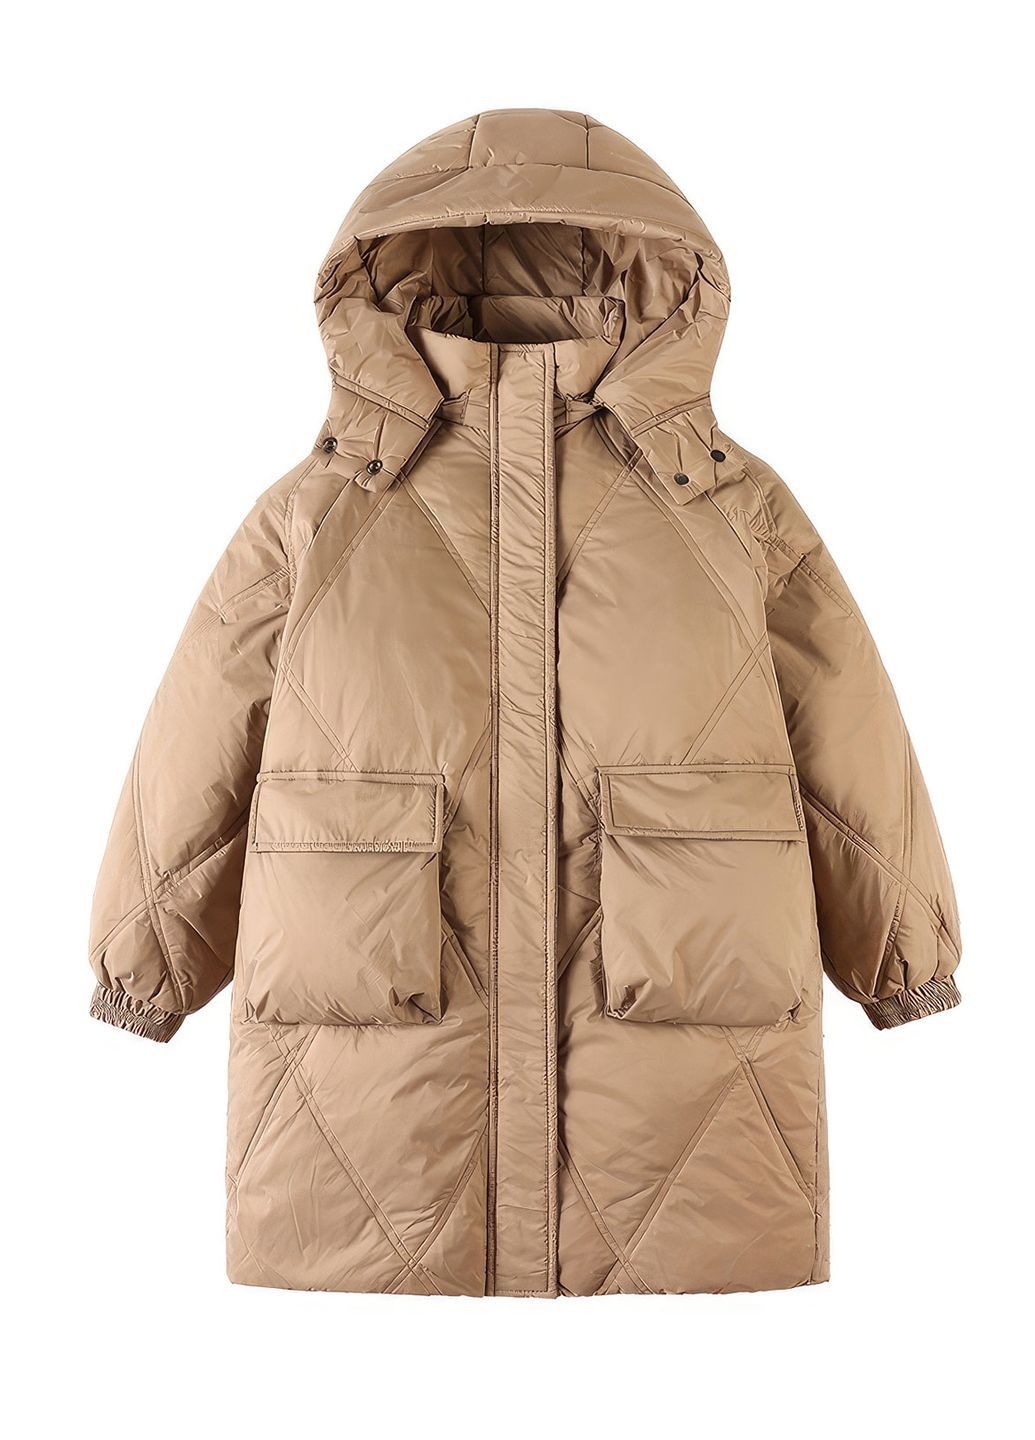 Коричнева зимня куртка для дівчинки пухова зимова 9107 150 см коричневий 68419 DobraMAMA